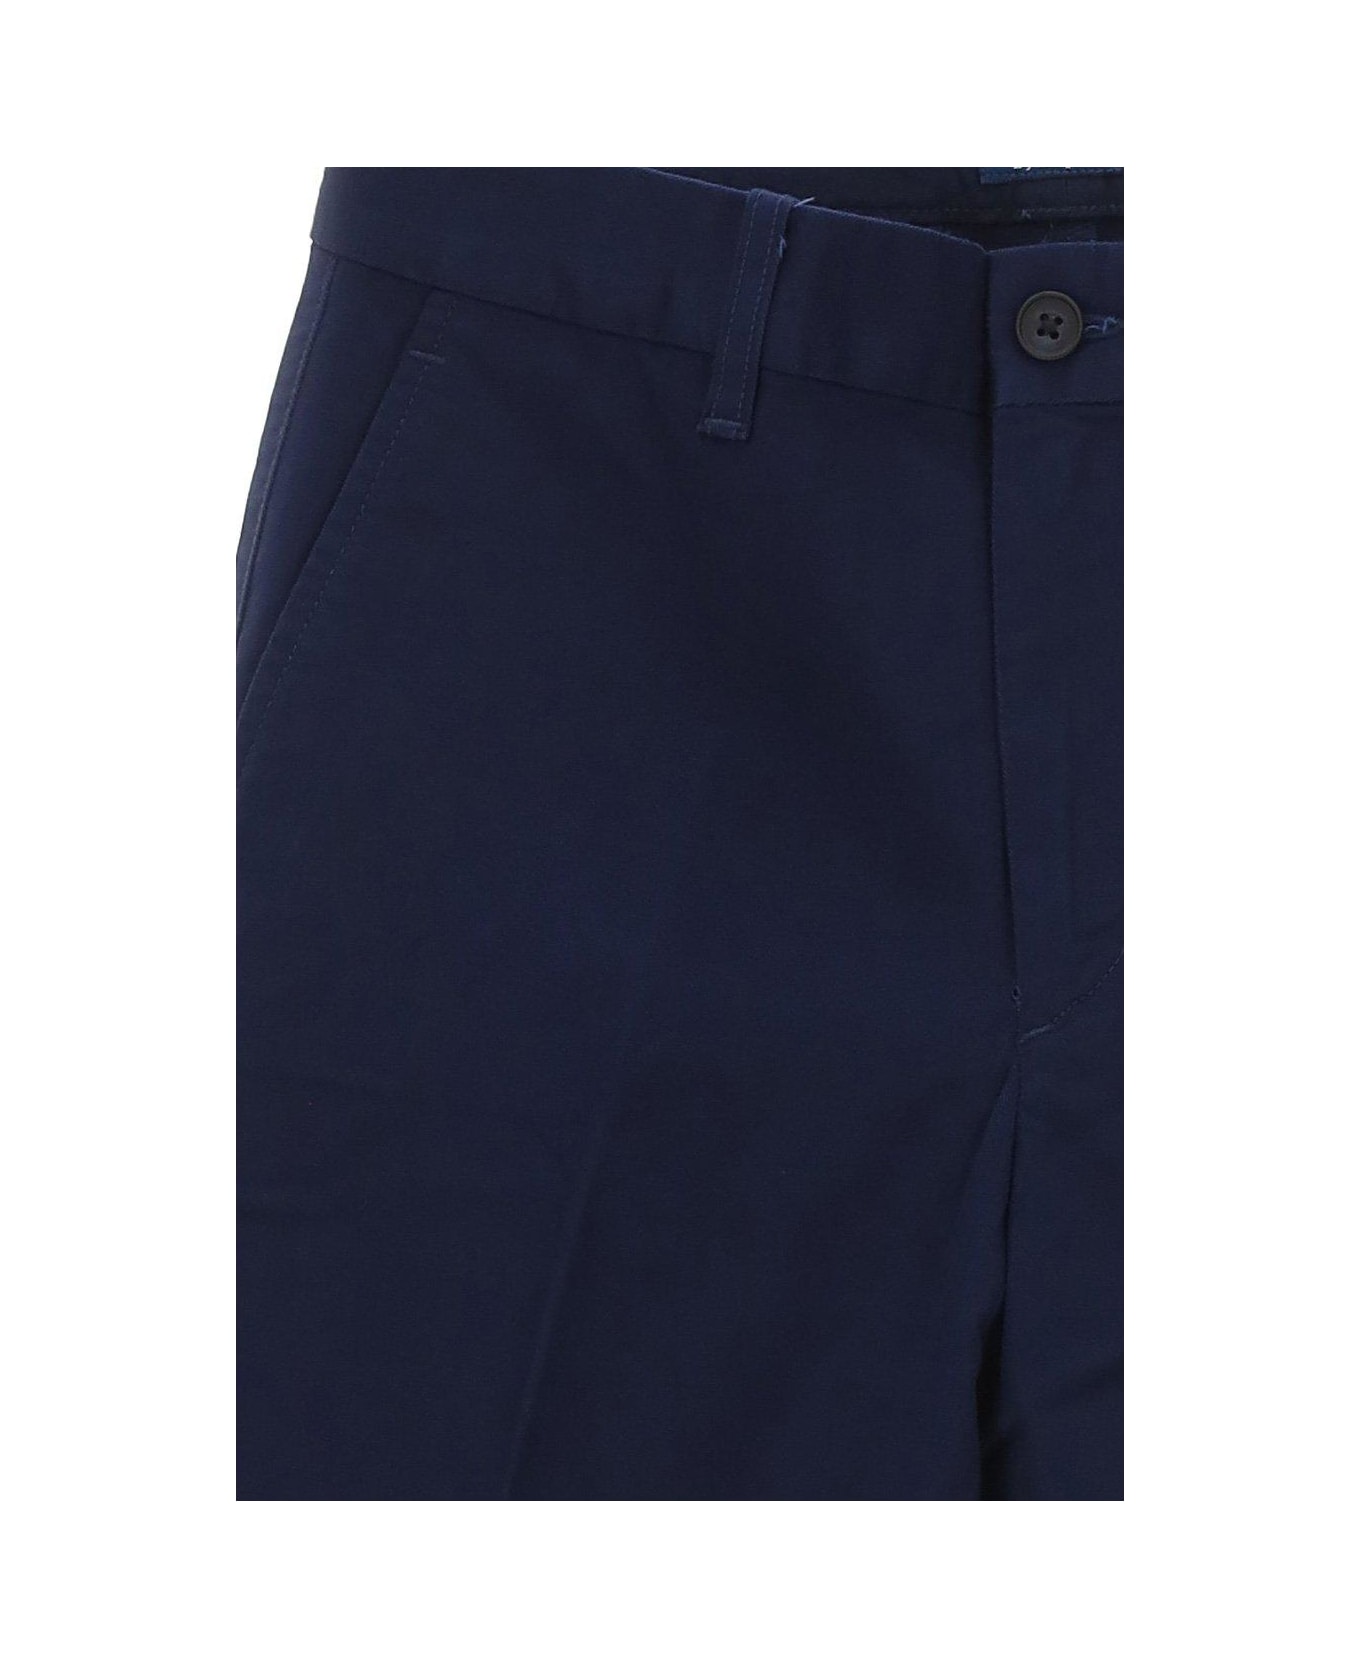 Ralph Lauren High-waist Slim-fit Cropped Trousers - Newport Navy